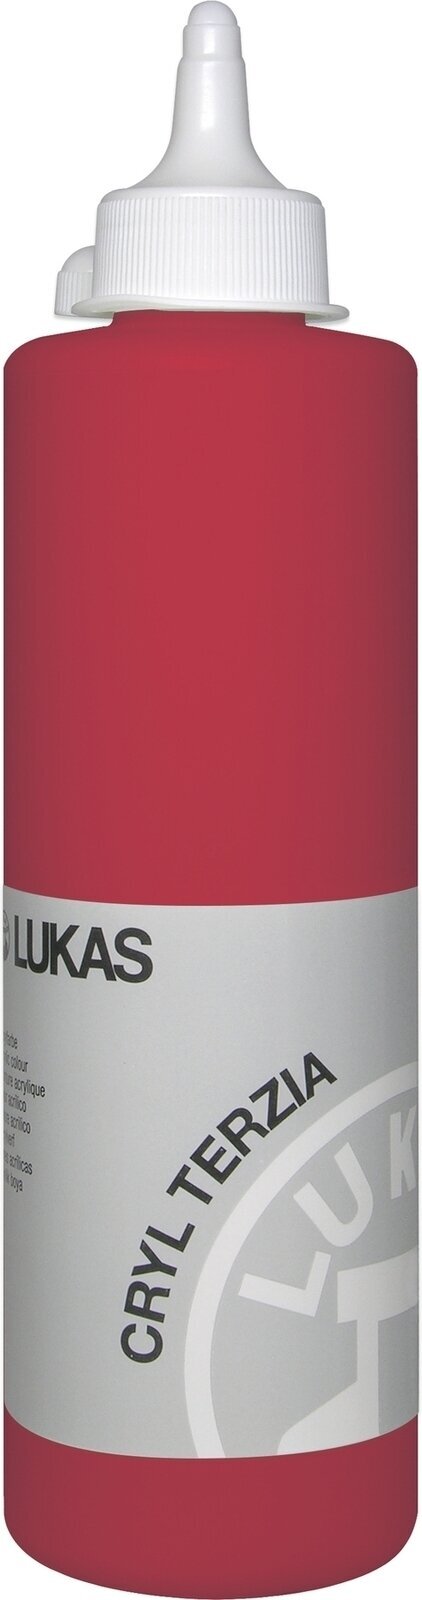 Acrylfarbe Lukas Cryl Terzia Acrylic Paint Plastic Bottle Acrylfarbe Cadmium Red Deep Hue 500 ml 1 Stck